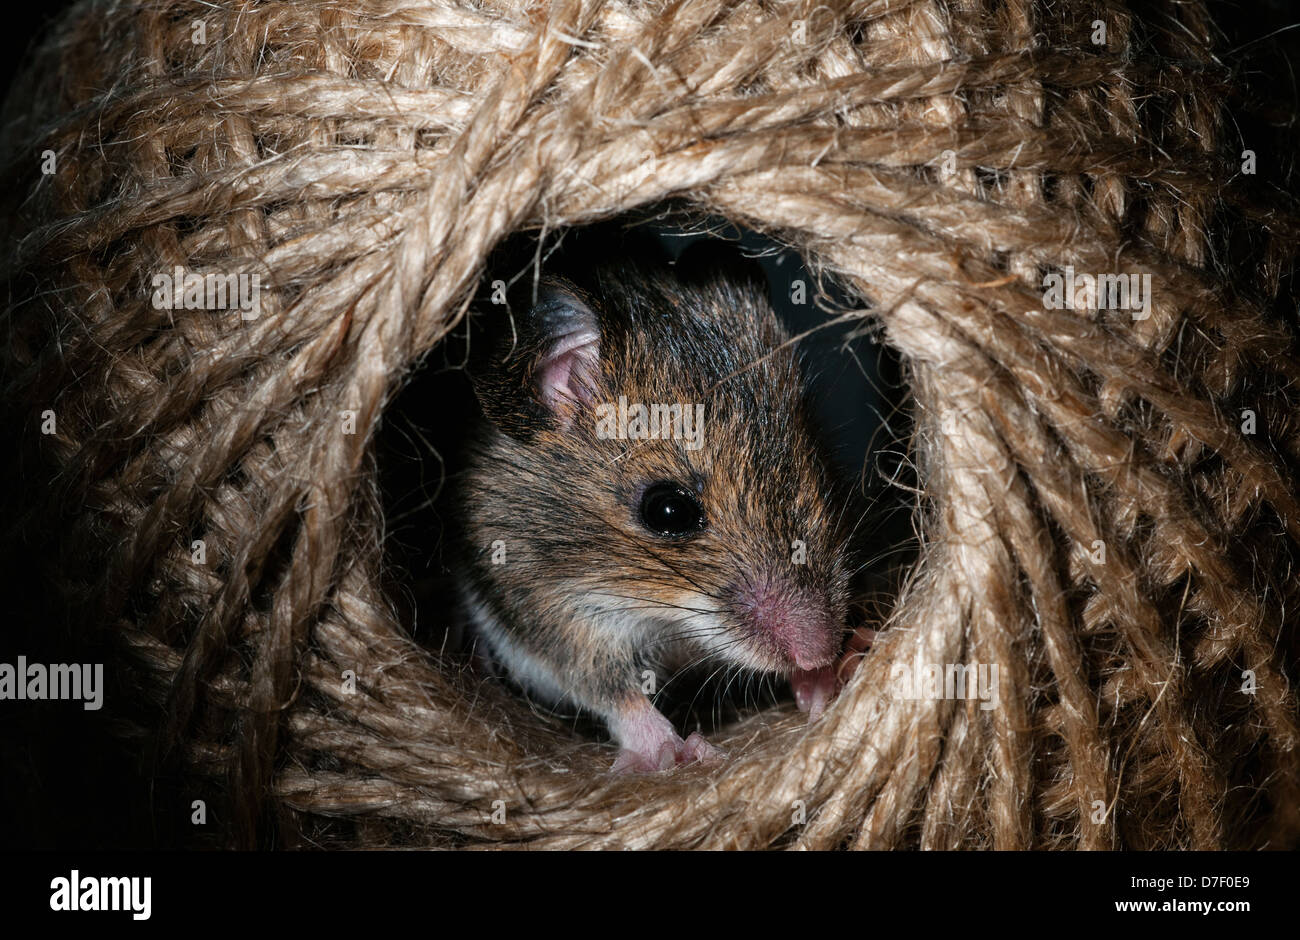 Ratón de madera escondido en una bola de hilo Foto de stock